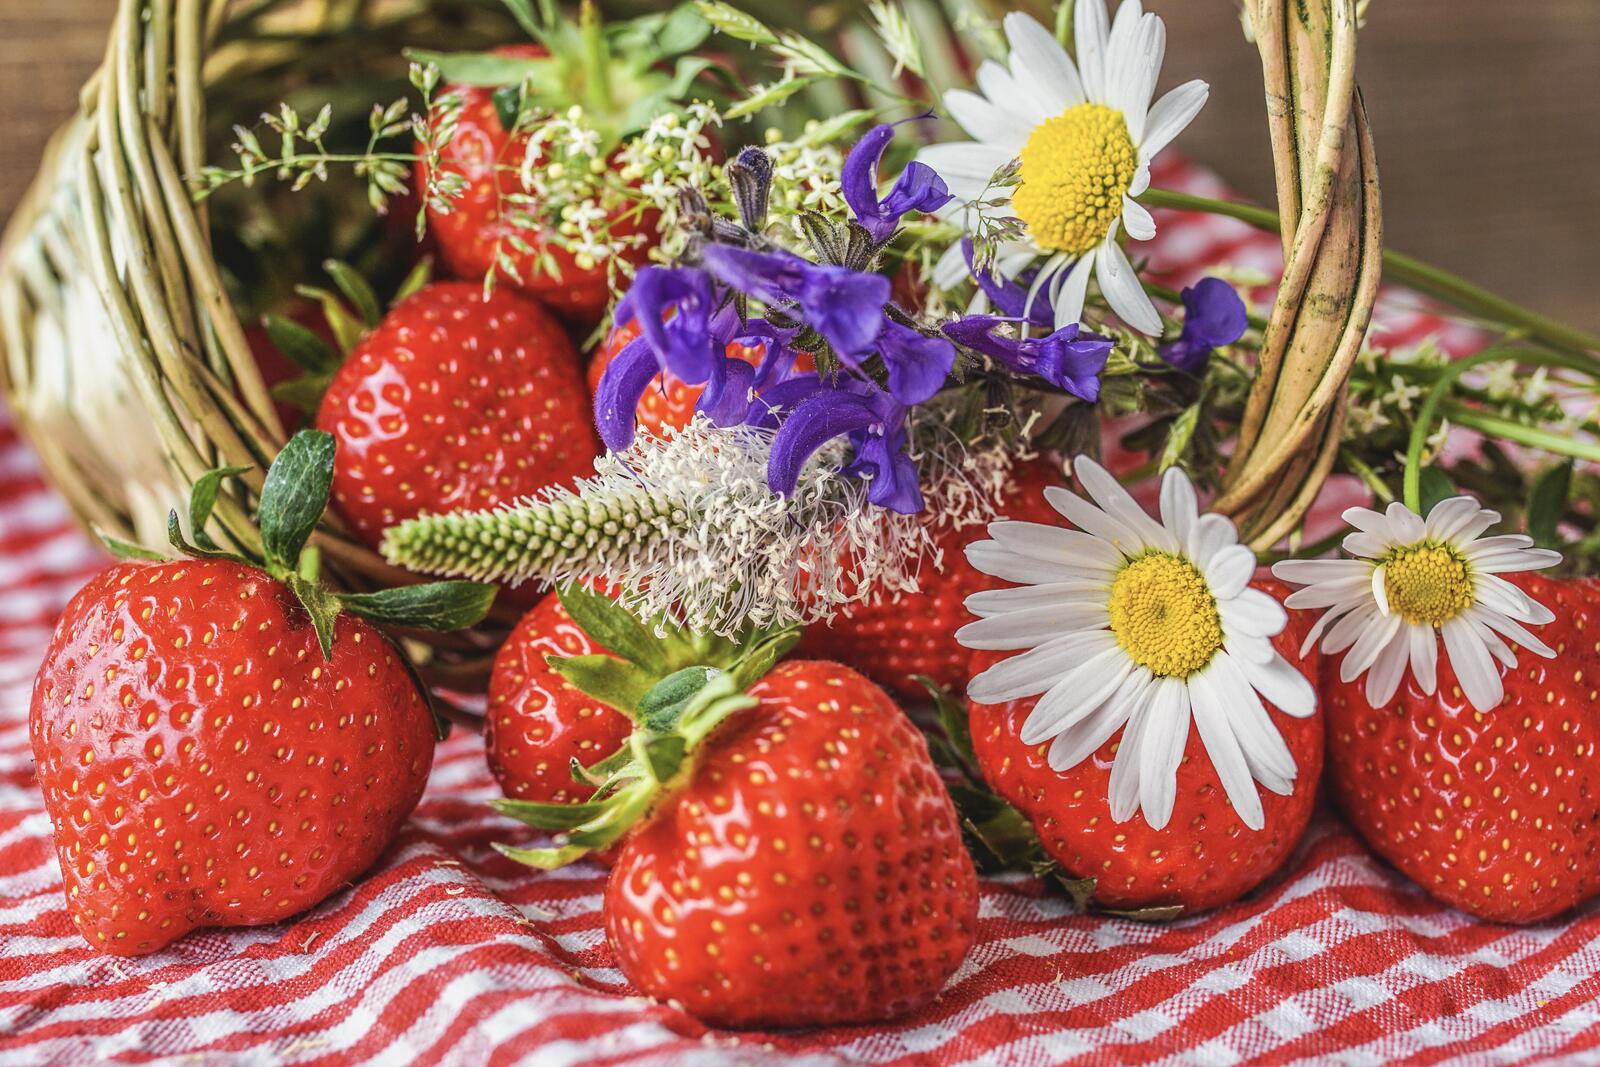 Wallpapers berries strawberries basket on the desktop